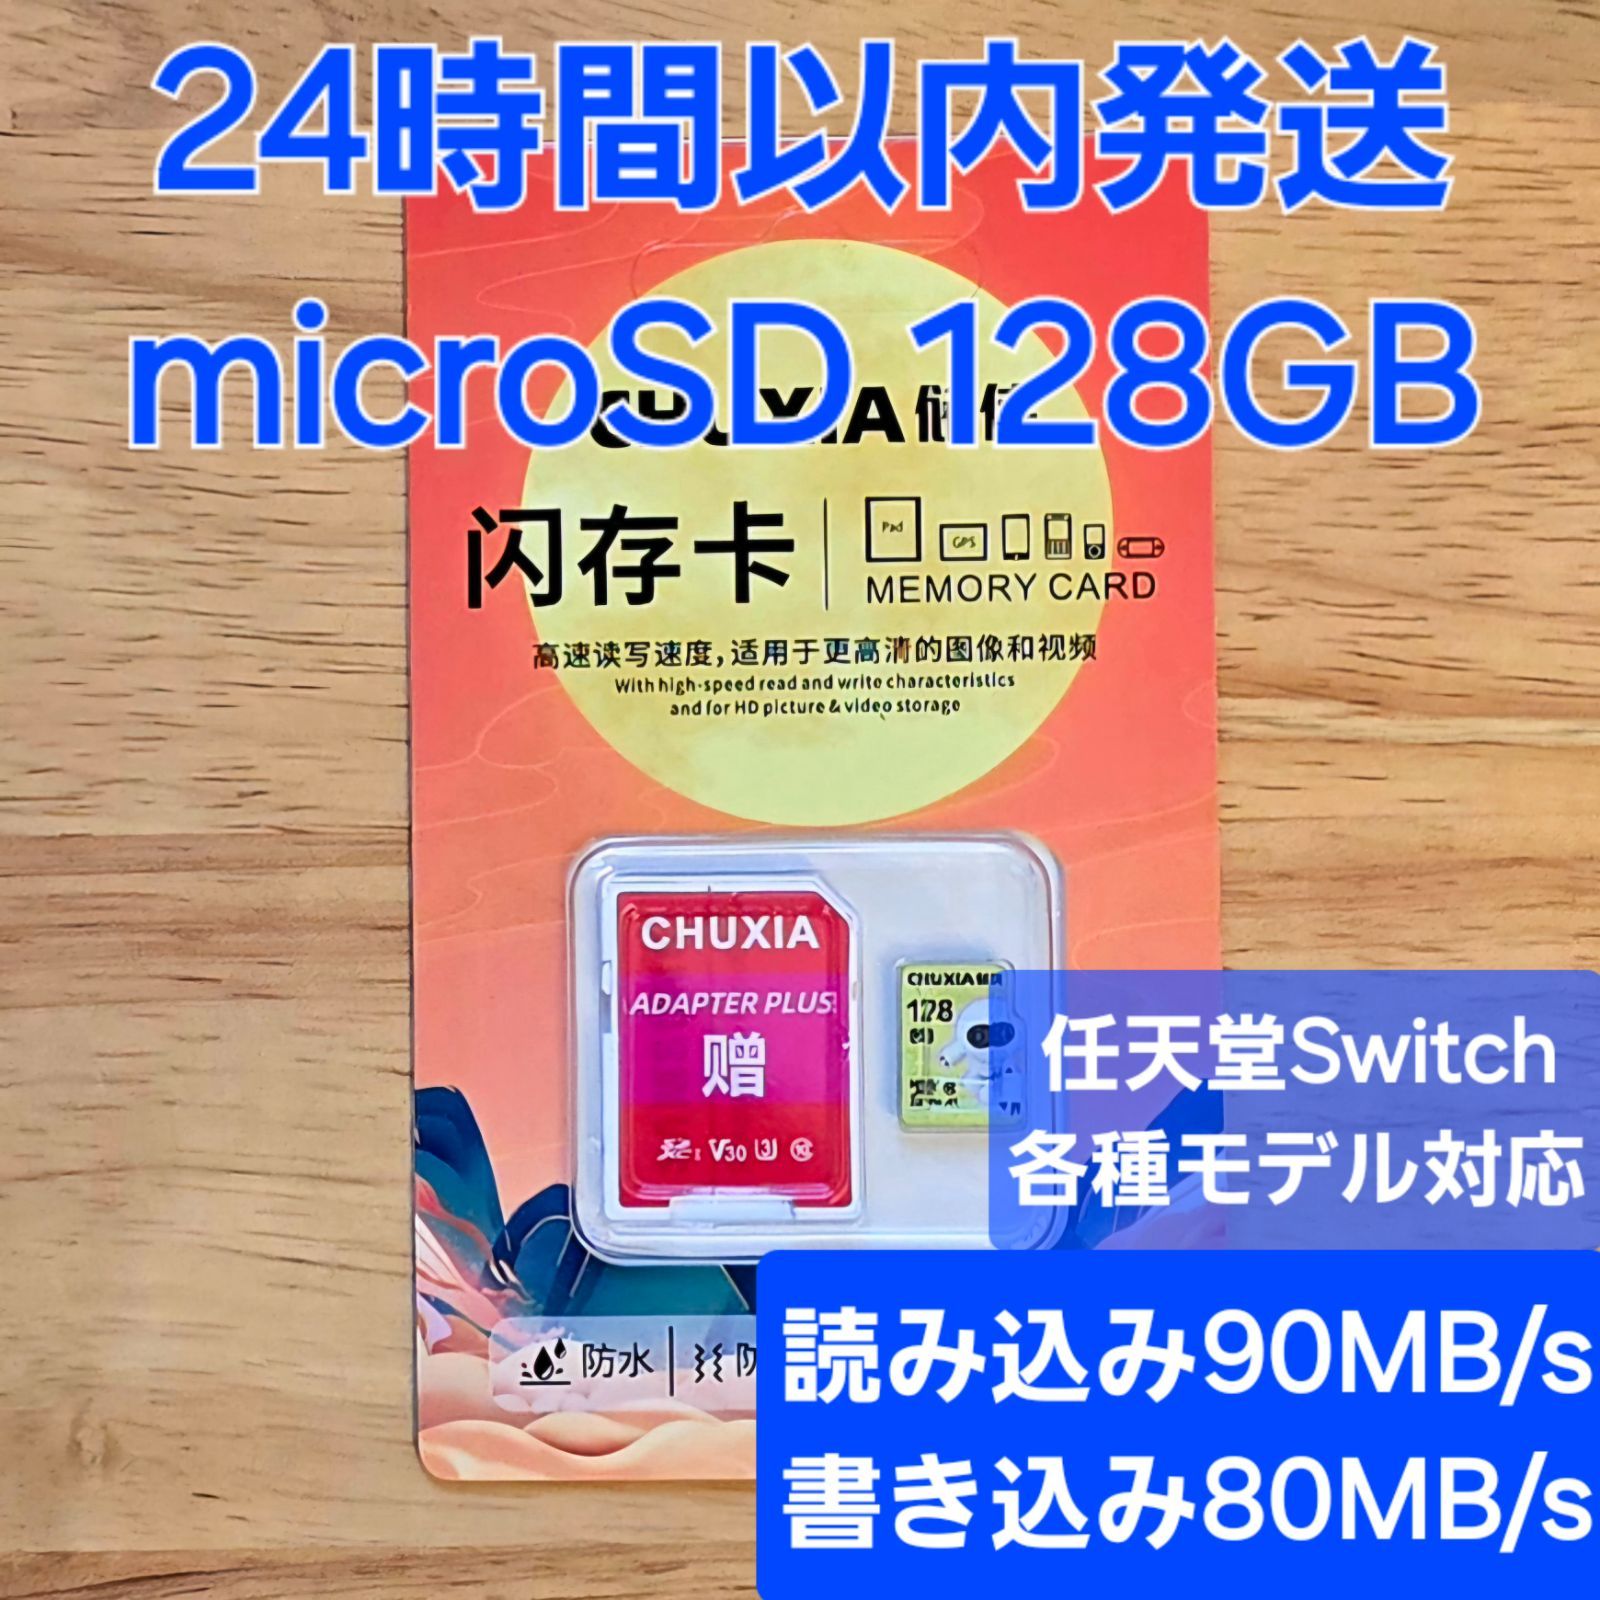 全読込/書込試験済み！高性能microSDカード 128GB マイクロSD 任天堂Switchにおすすめ！ - メルカリ